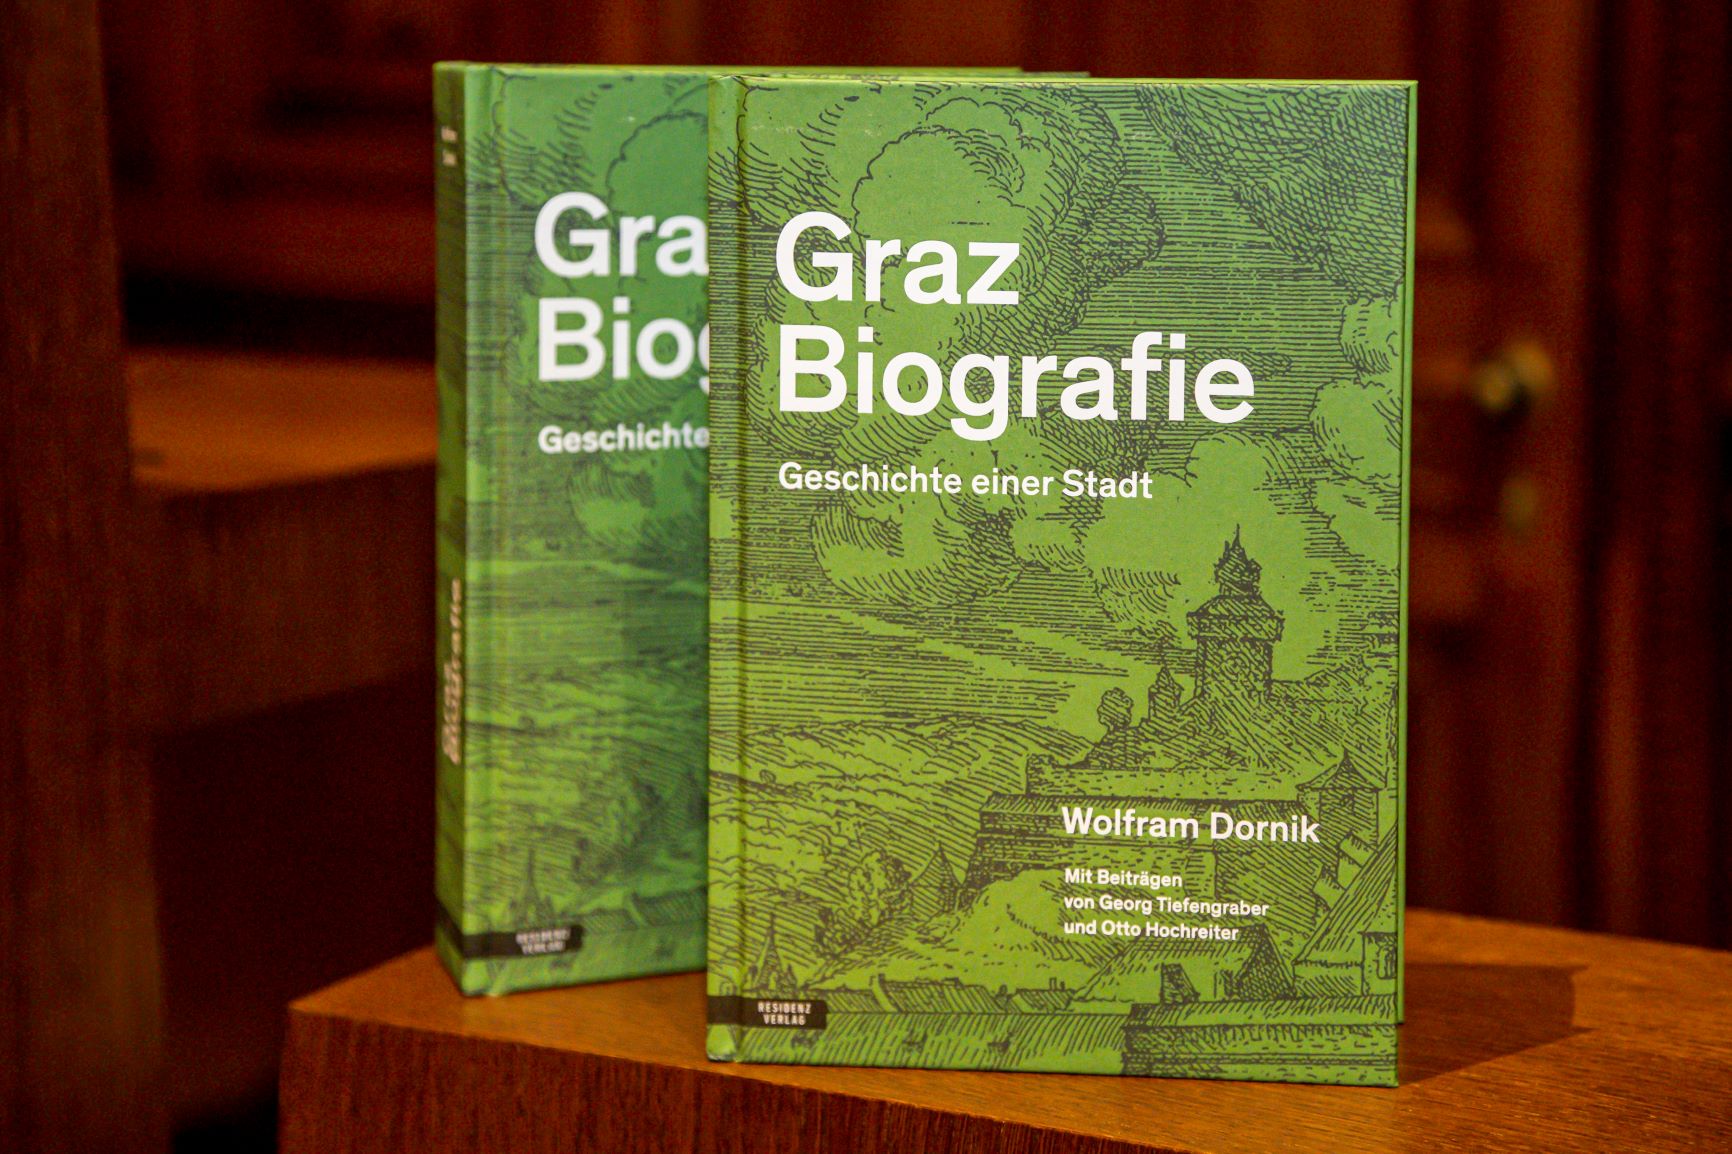 Auf einem dunkelbraunen Holzpult sind zwei Exemplare des Buches Graz Biografie nebeneinander aufgestellt.